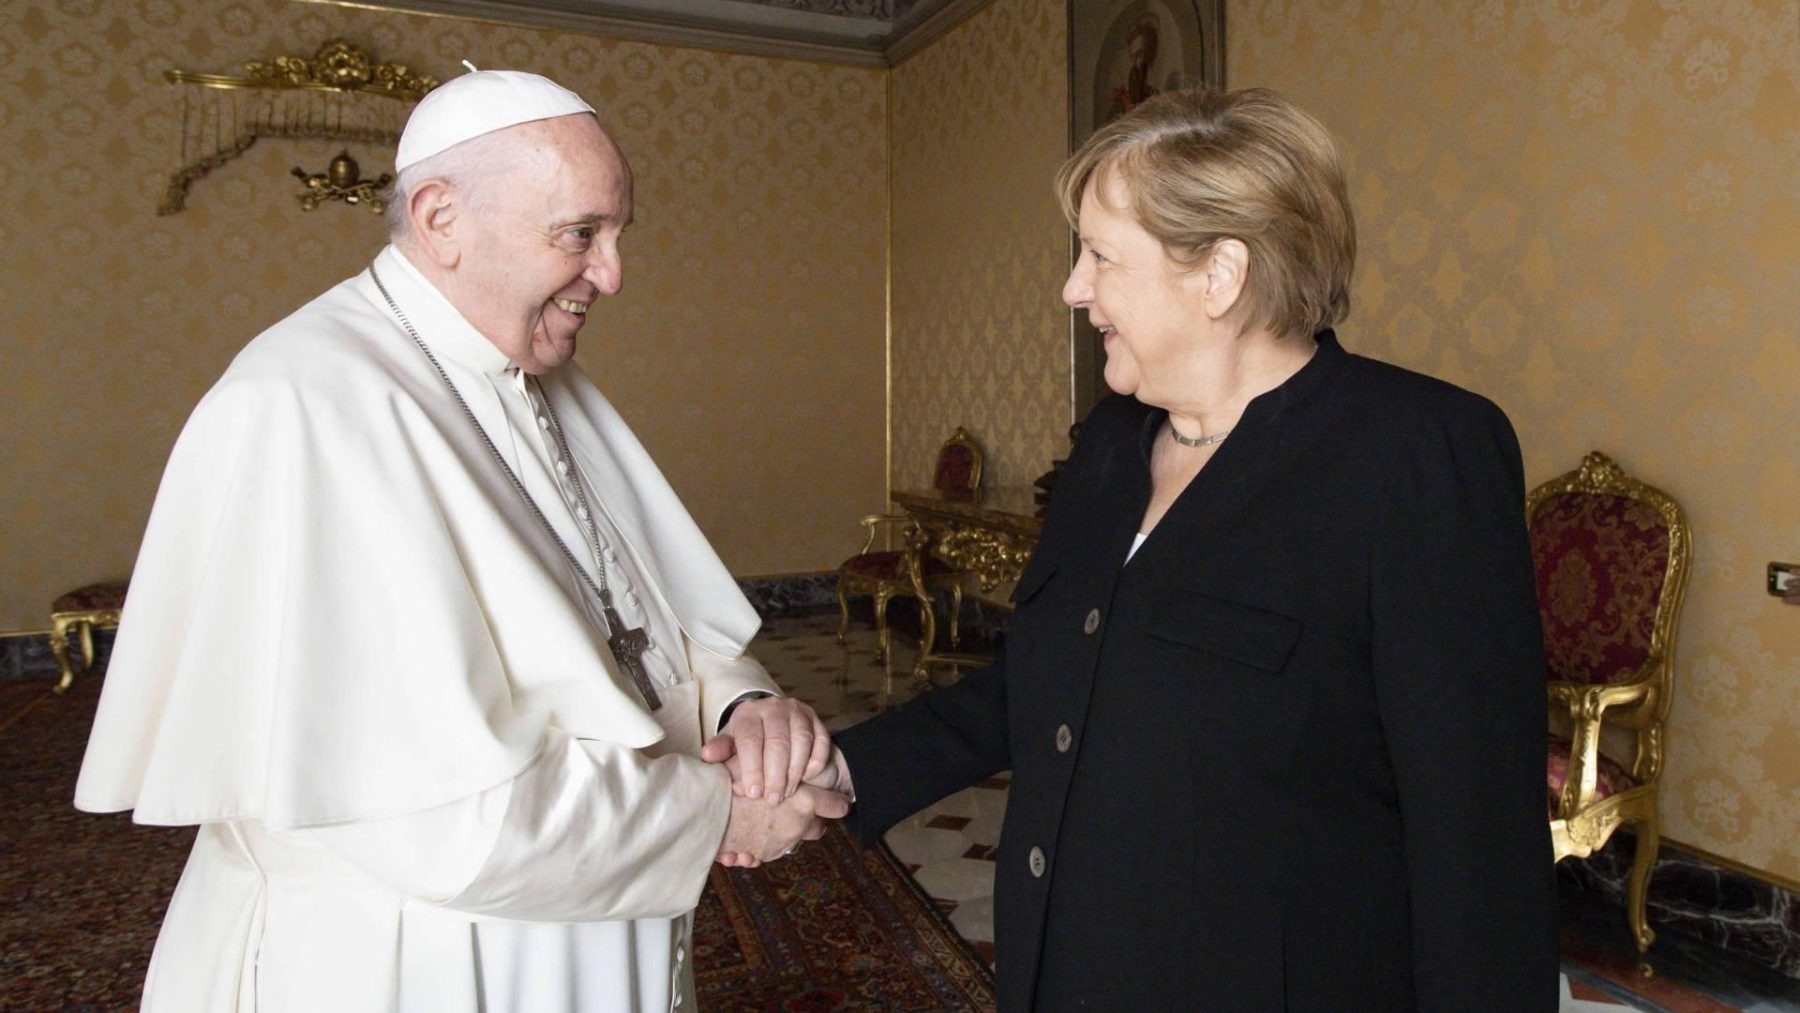 Bondskanselier Angela Merkel brengt afscheidsbezoek aan paus Franciscus